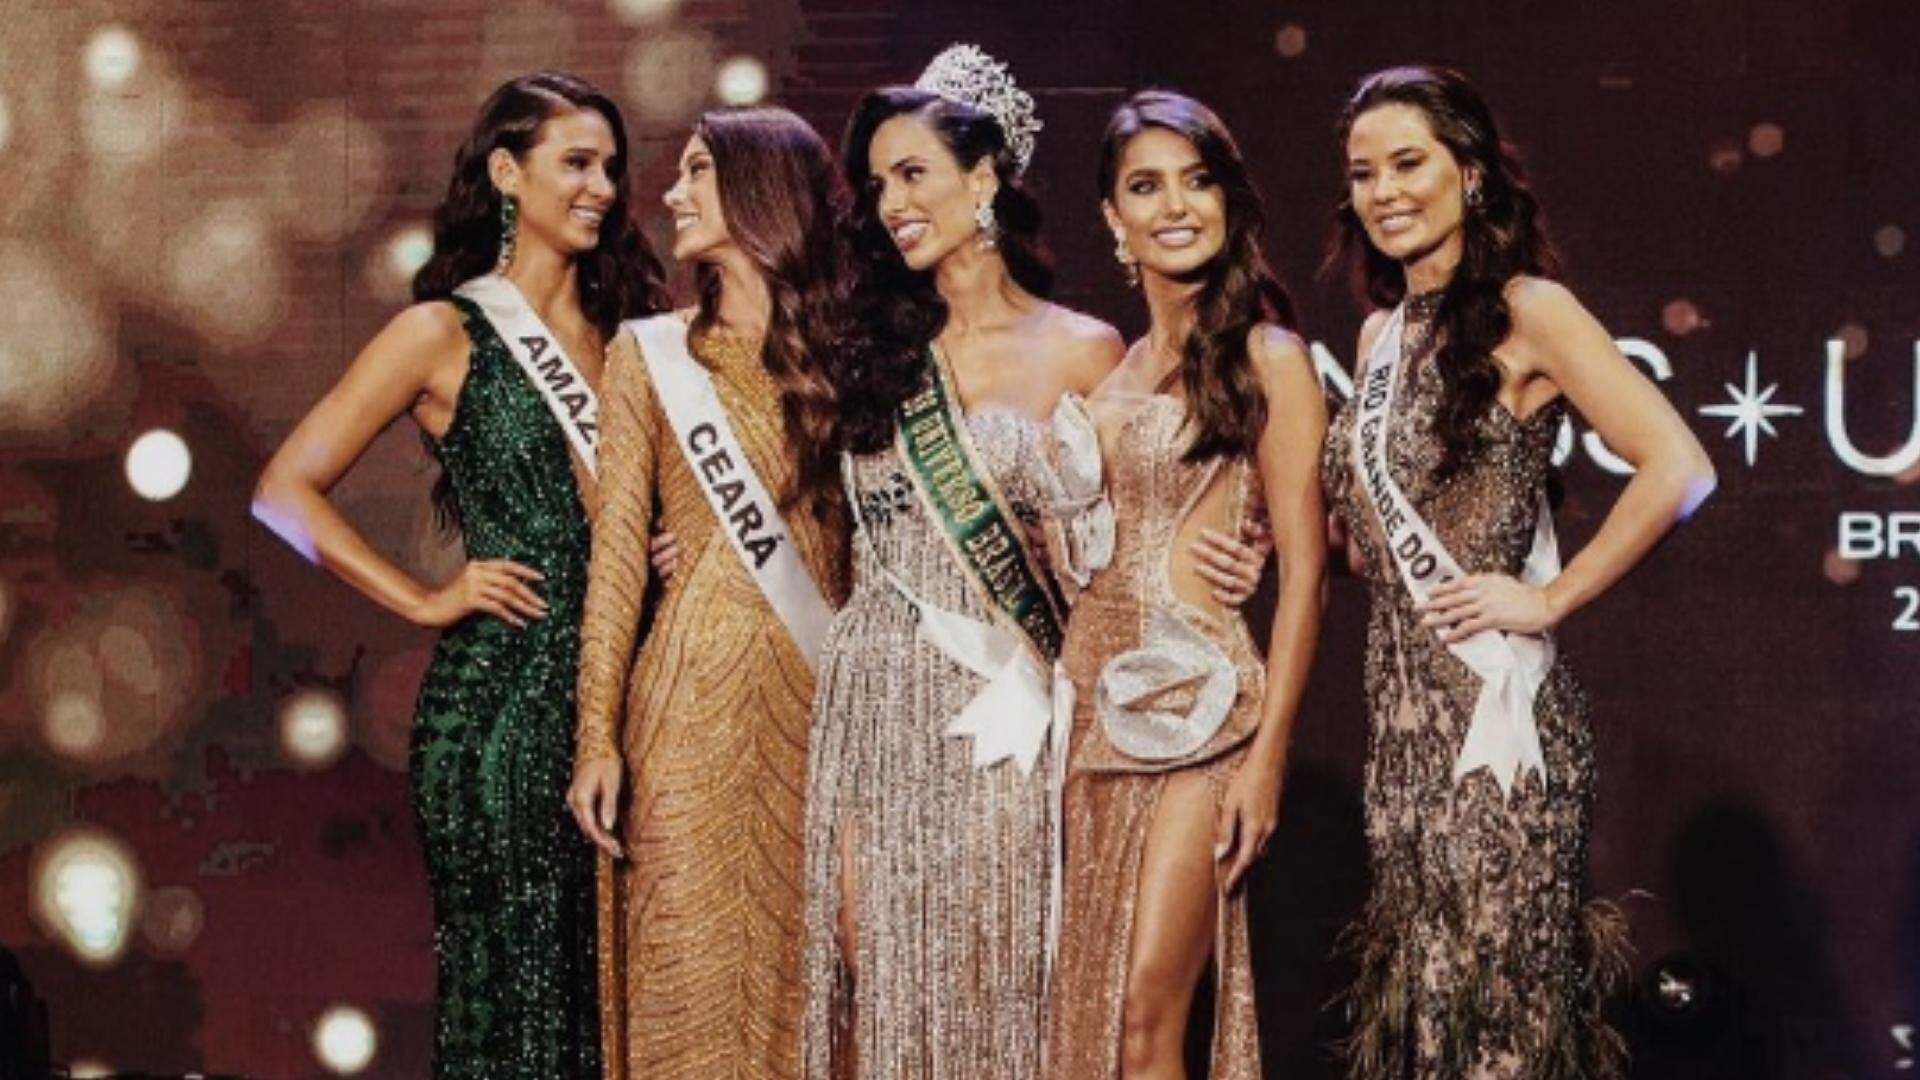 Miss Universo Brasil 2022: Mia Mamede foi eleita com vestido strapless de pedrarias e fenda - Metropolitana FM